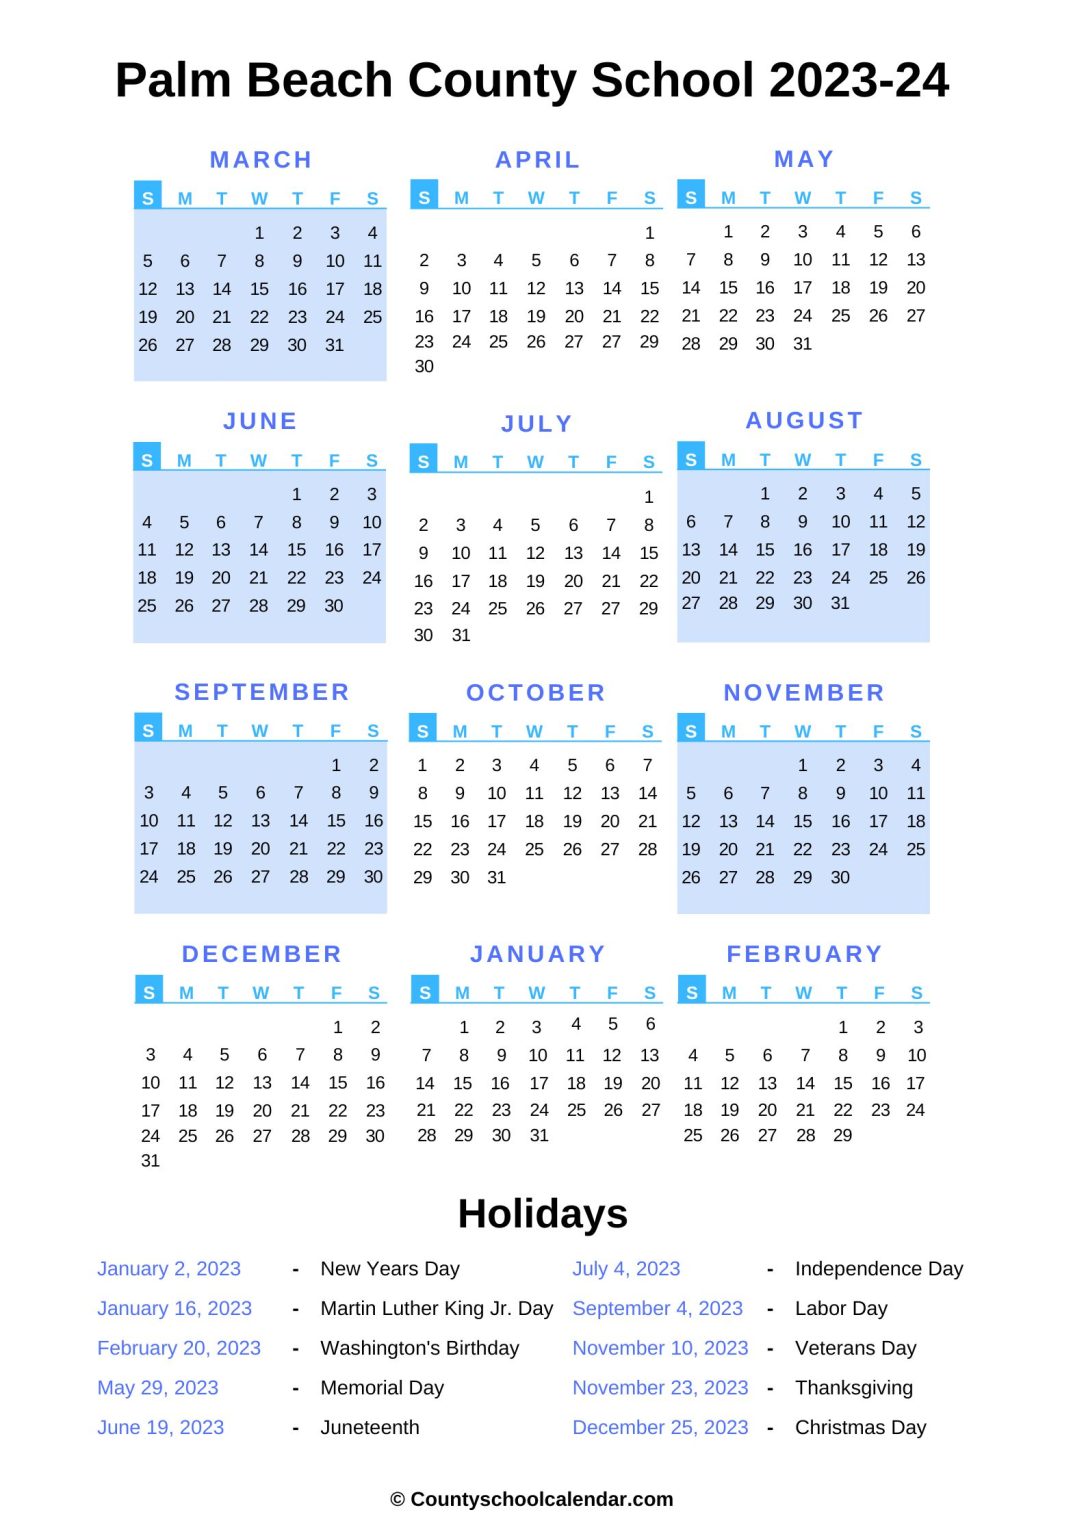 Palm Beach County School Calendar (2022 2023) with Holidays